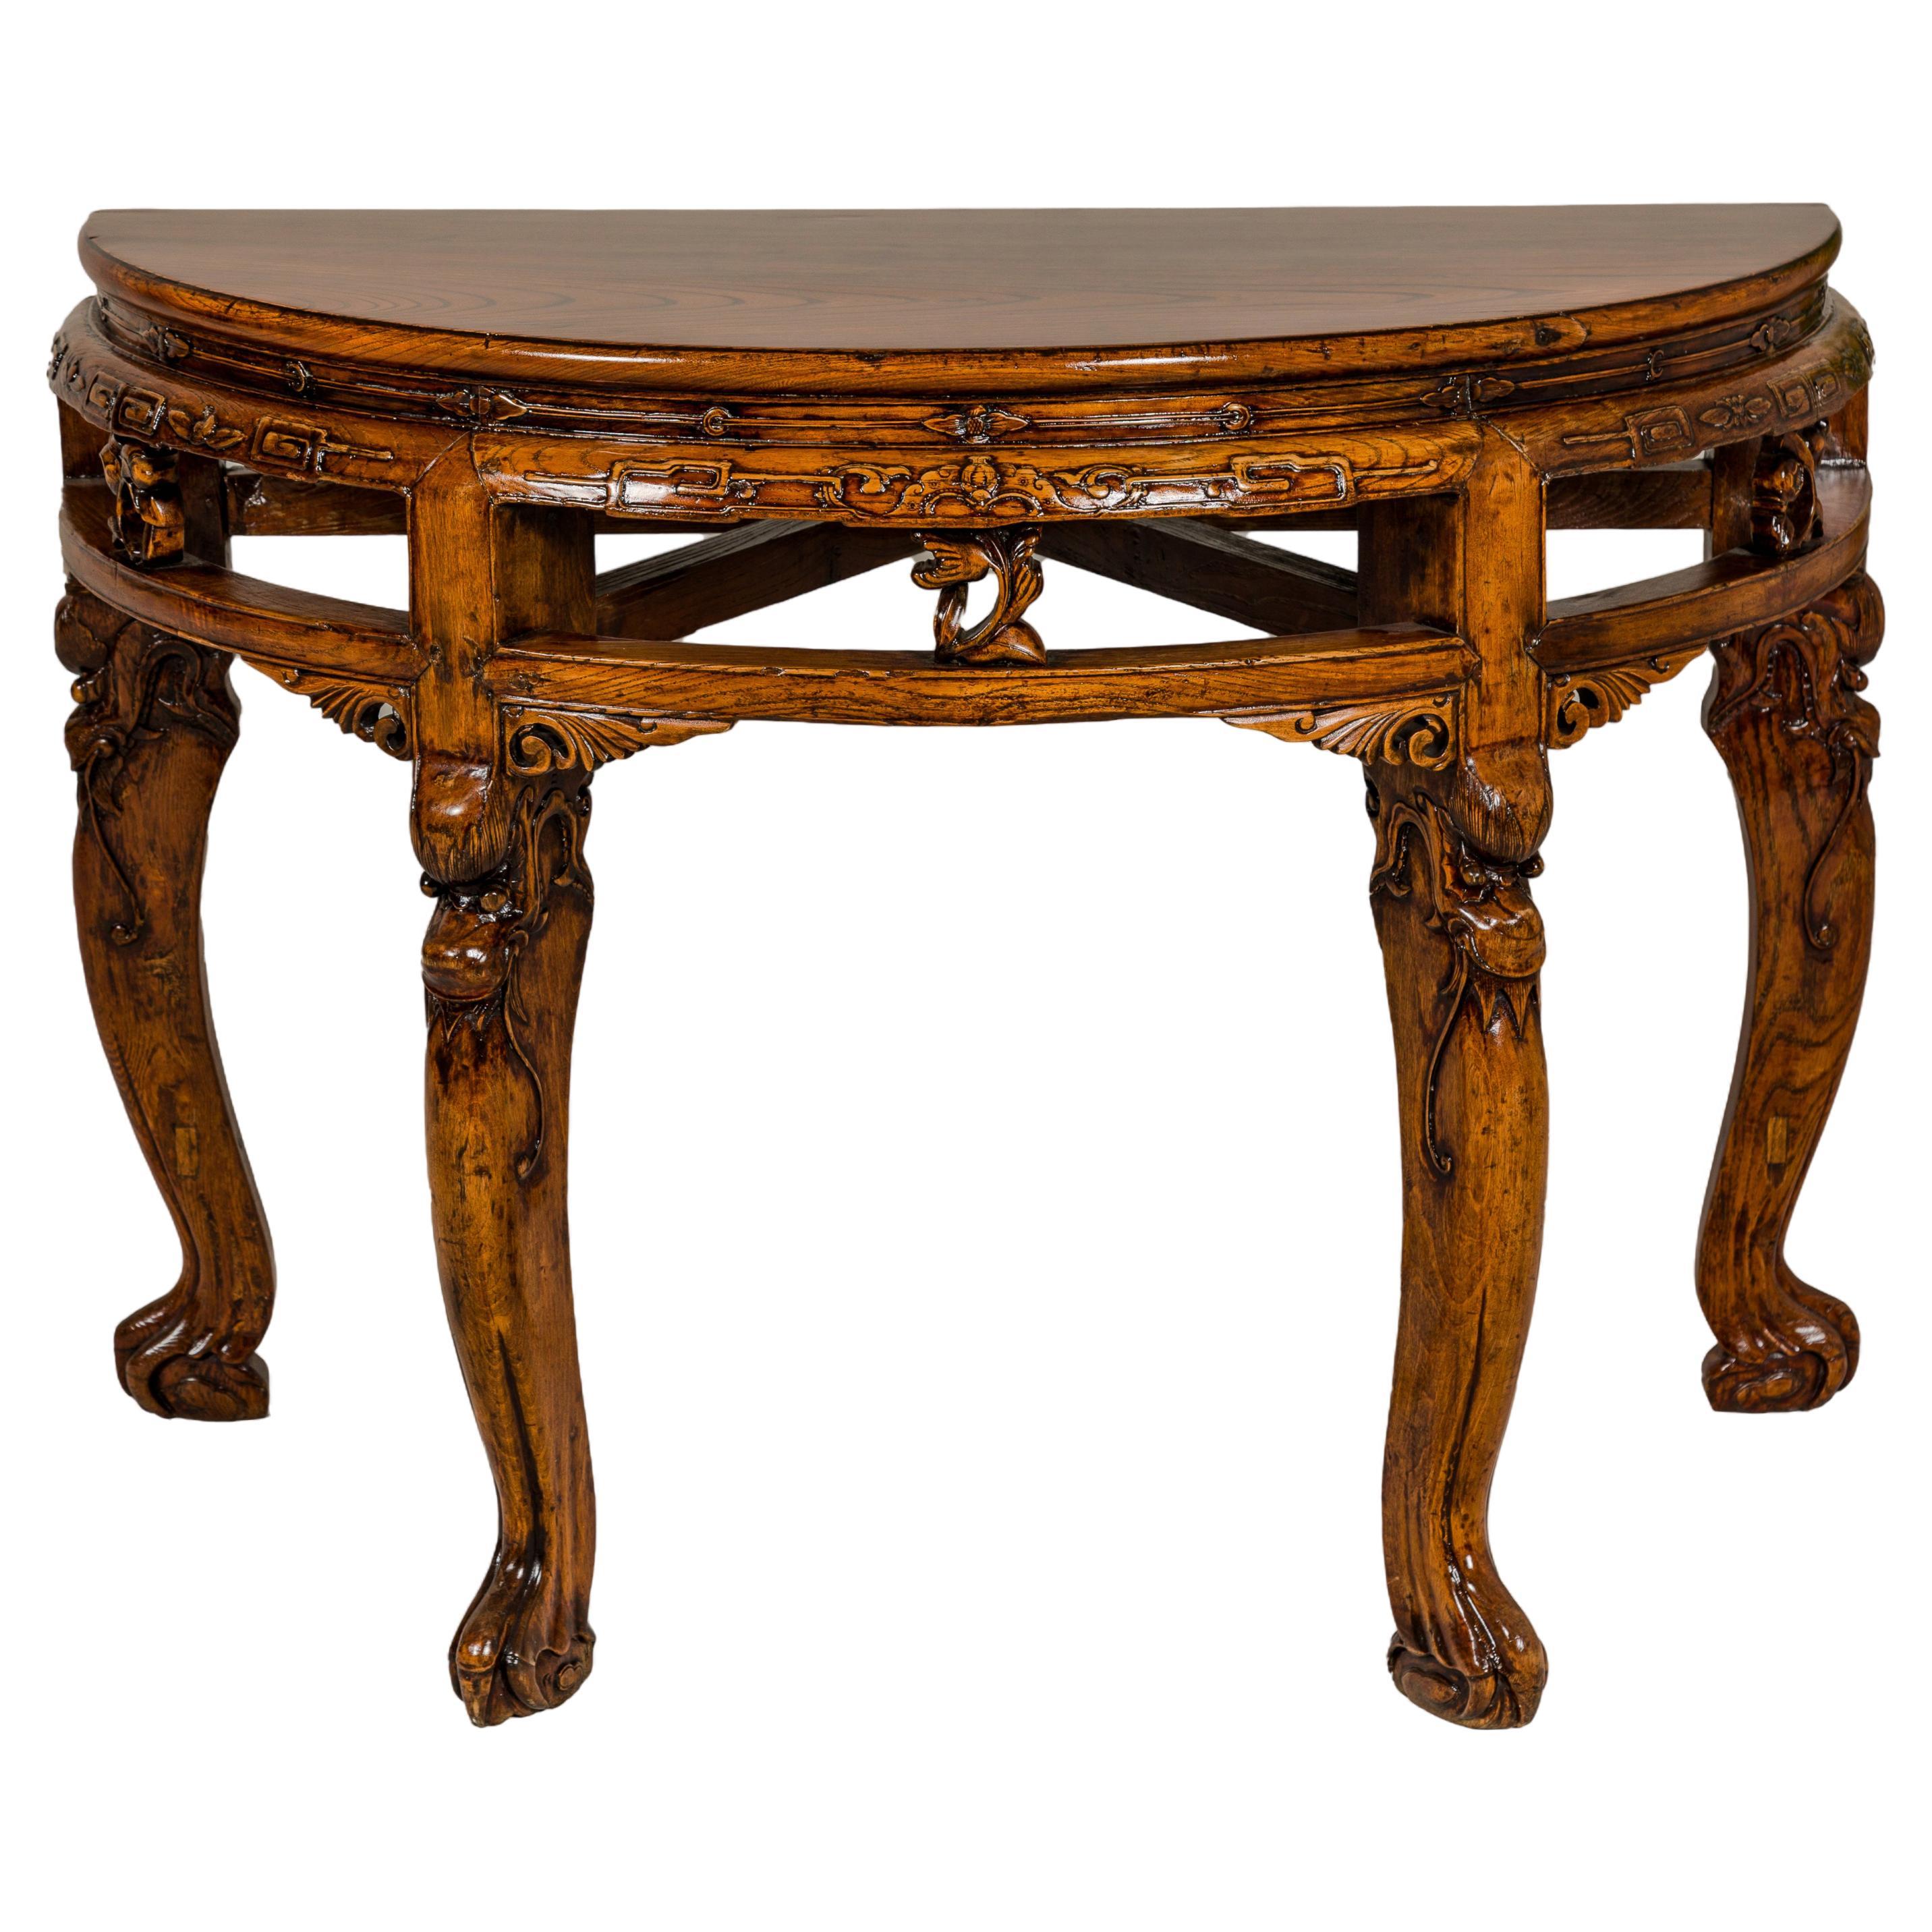 Holz-Demilune-Tisch aus dem 19. Jahrhundert mit geschnitzten mythischen Kreationen